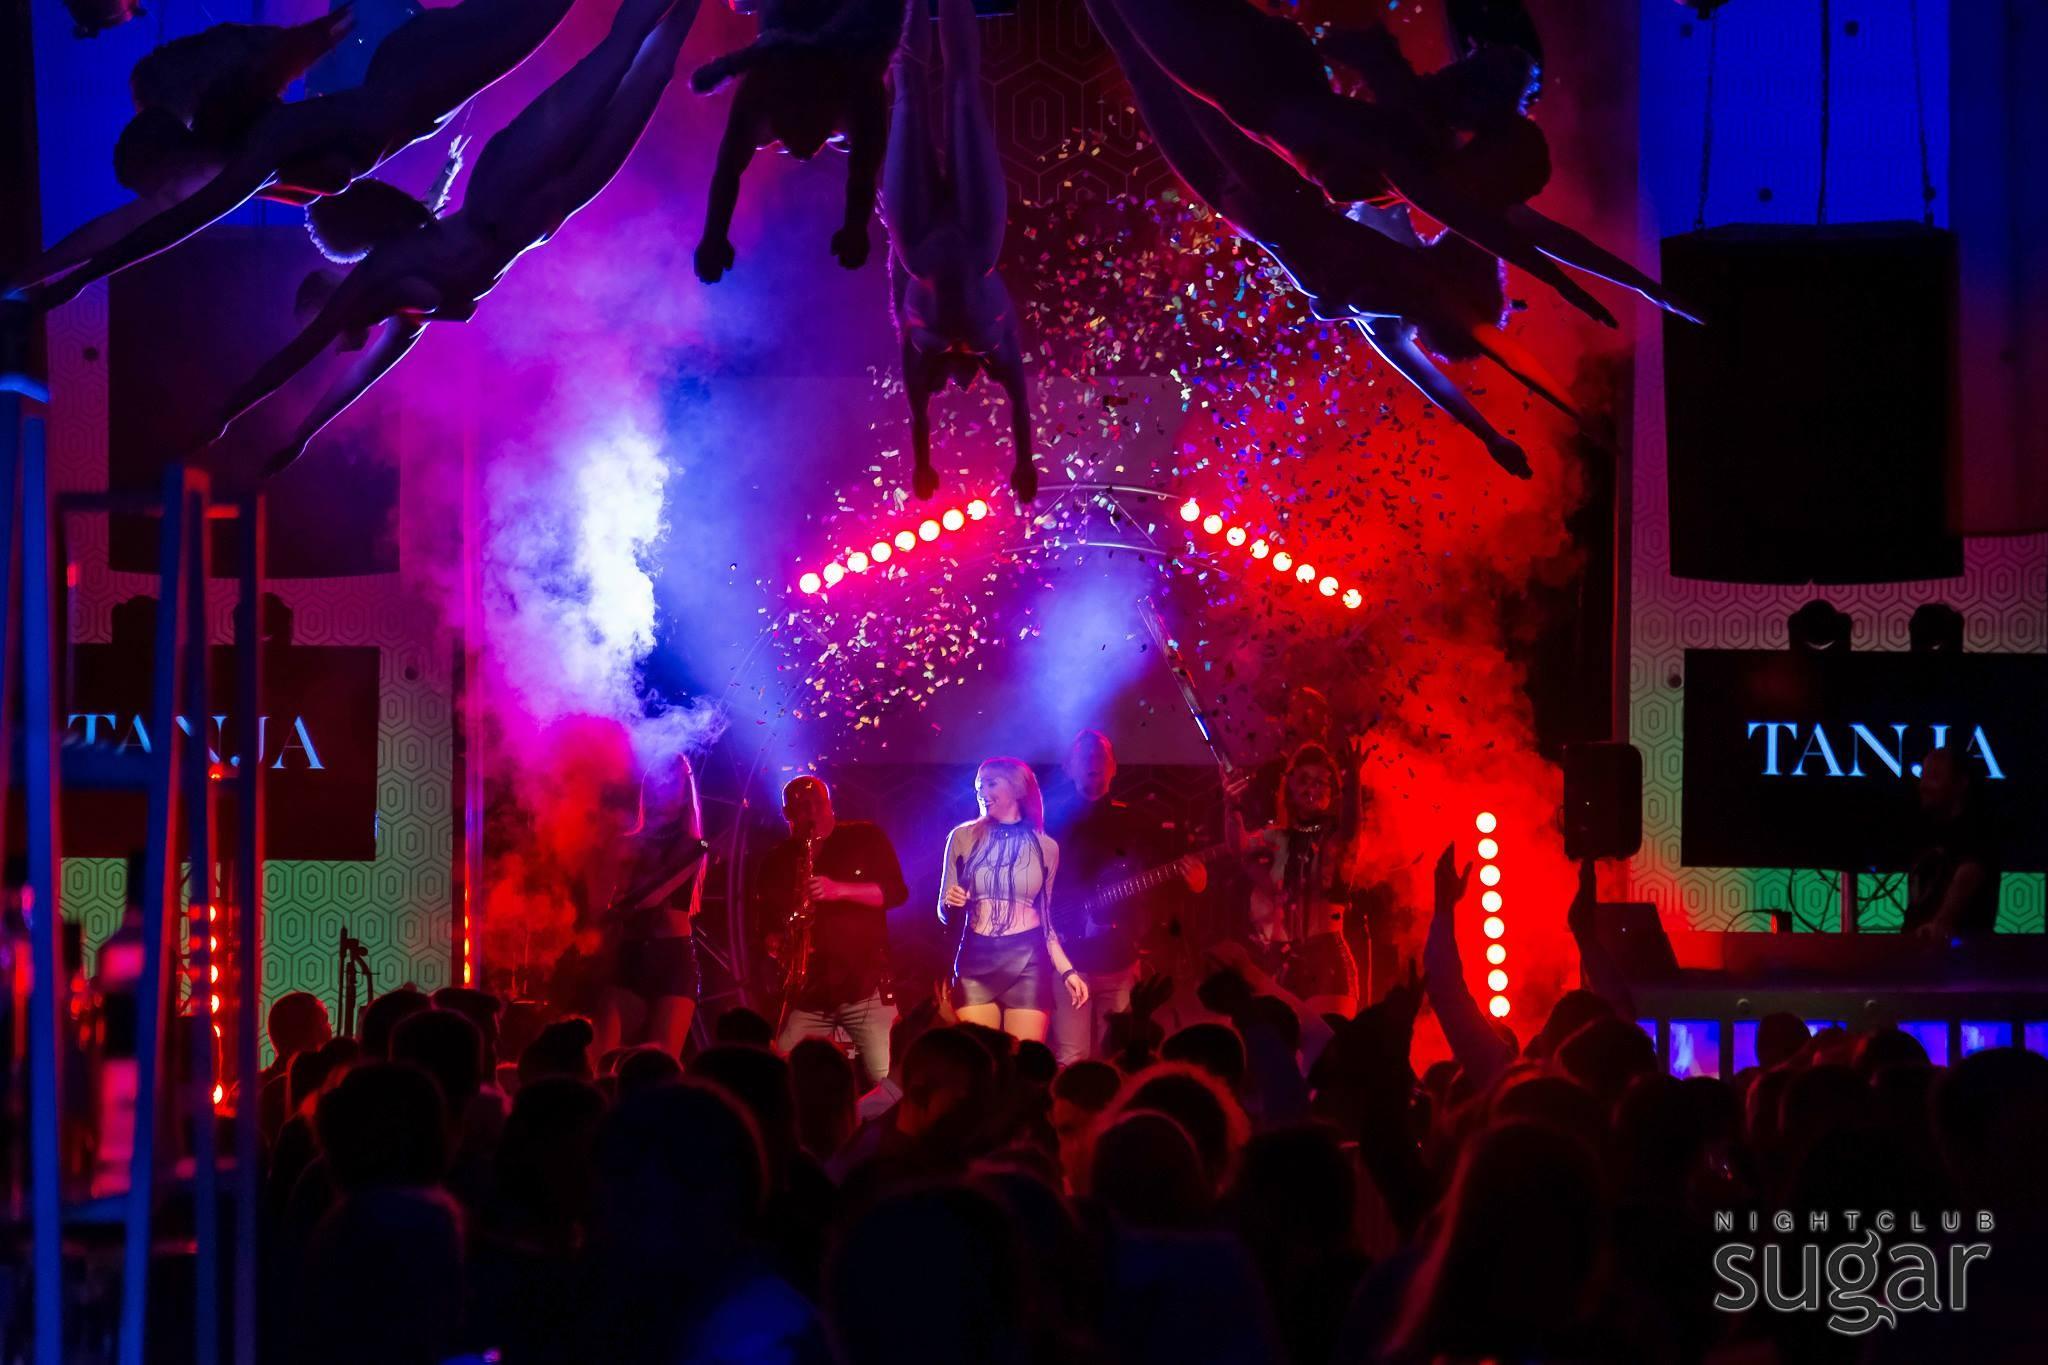 Best parties in Pärnu are held at the Nightclub Sugar